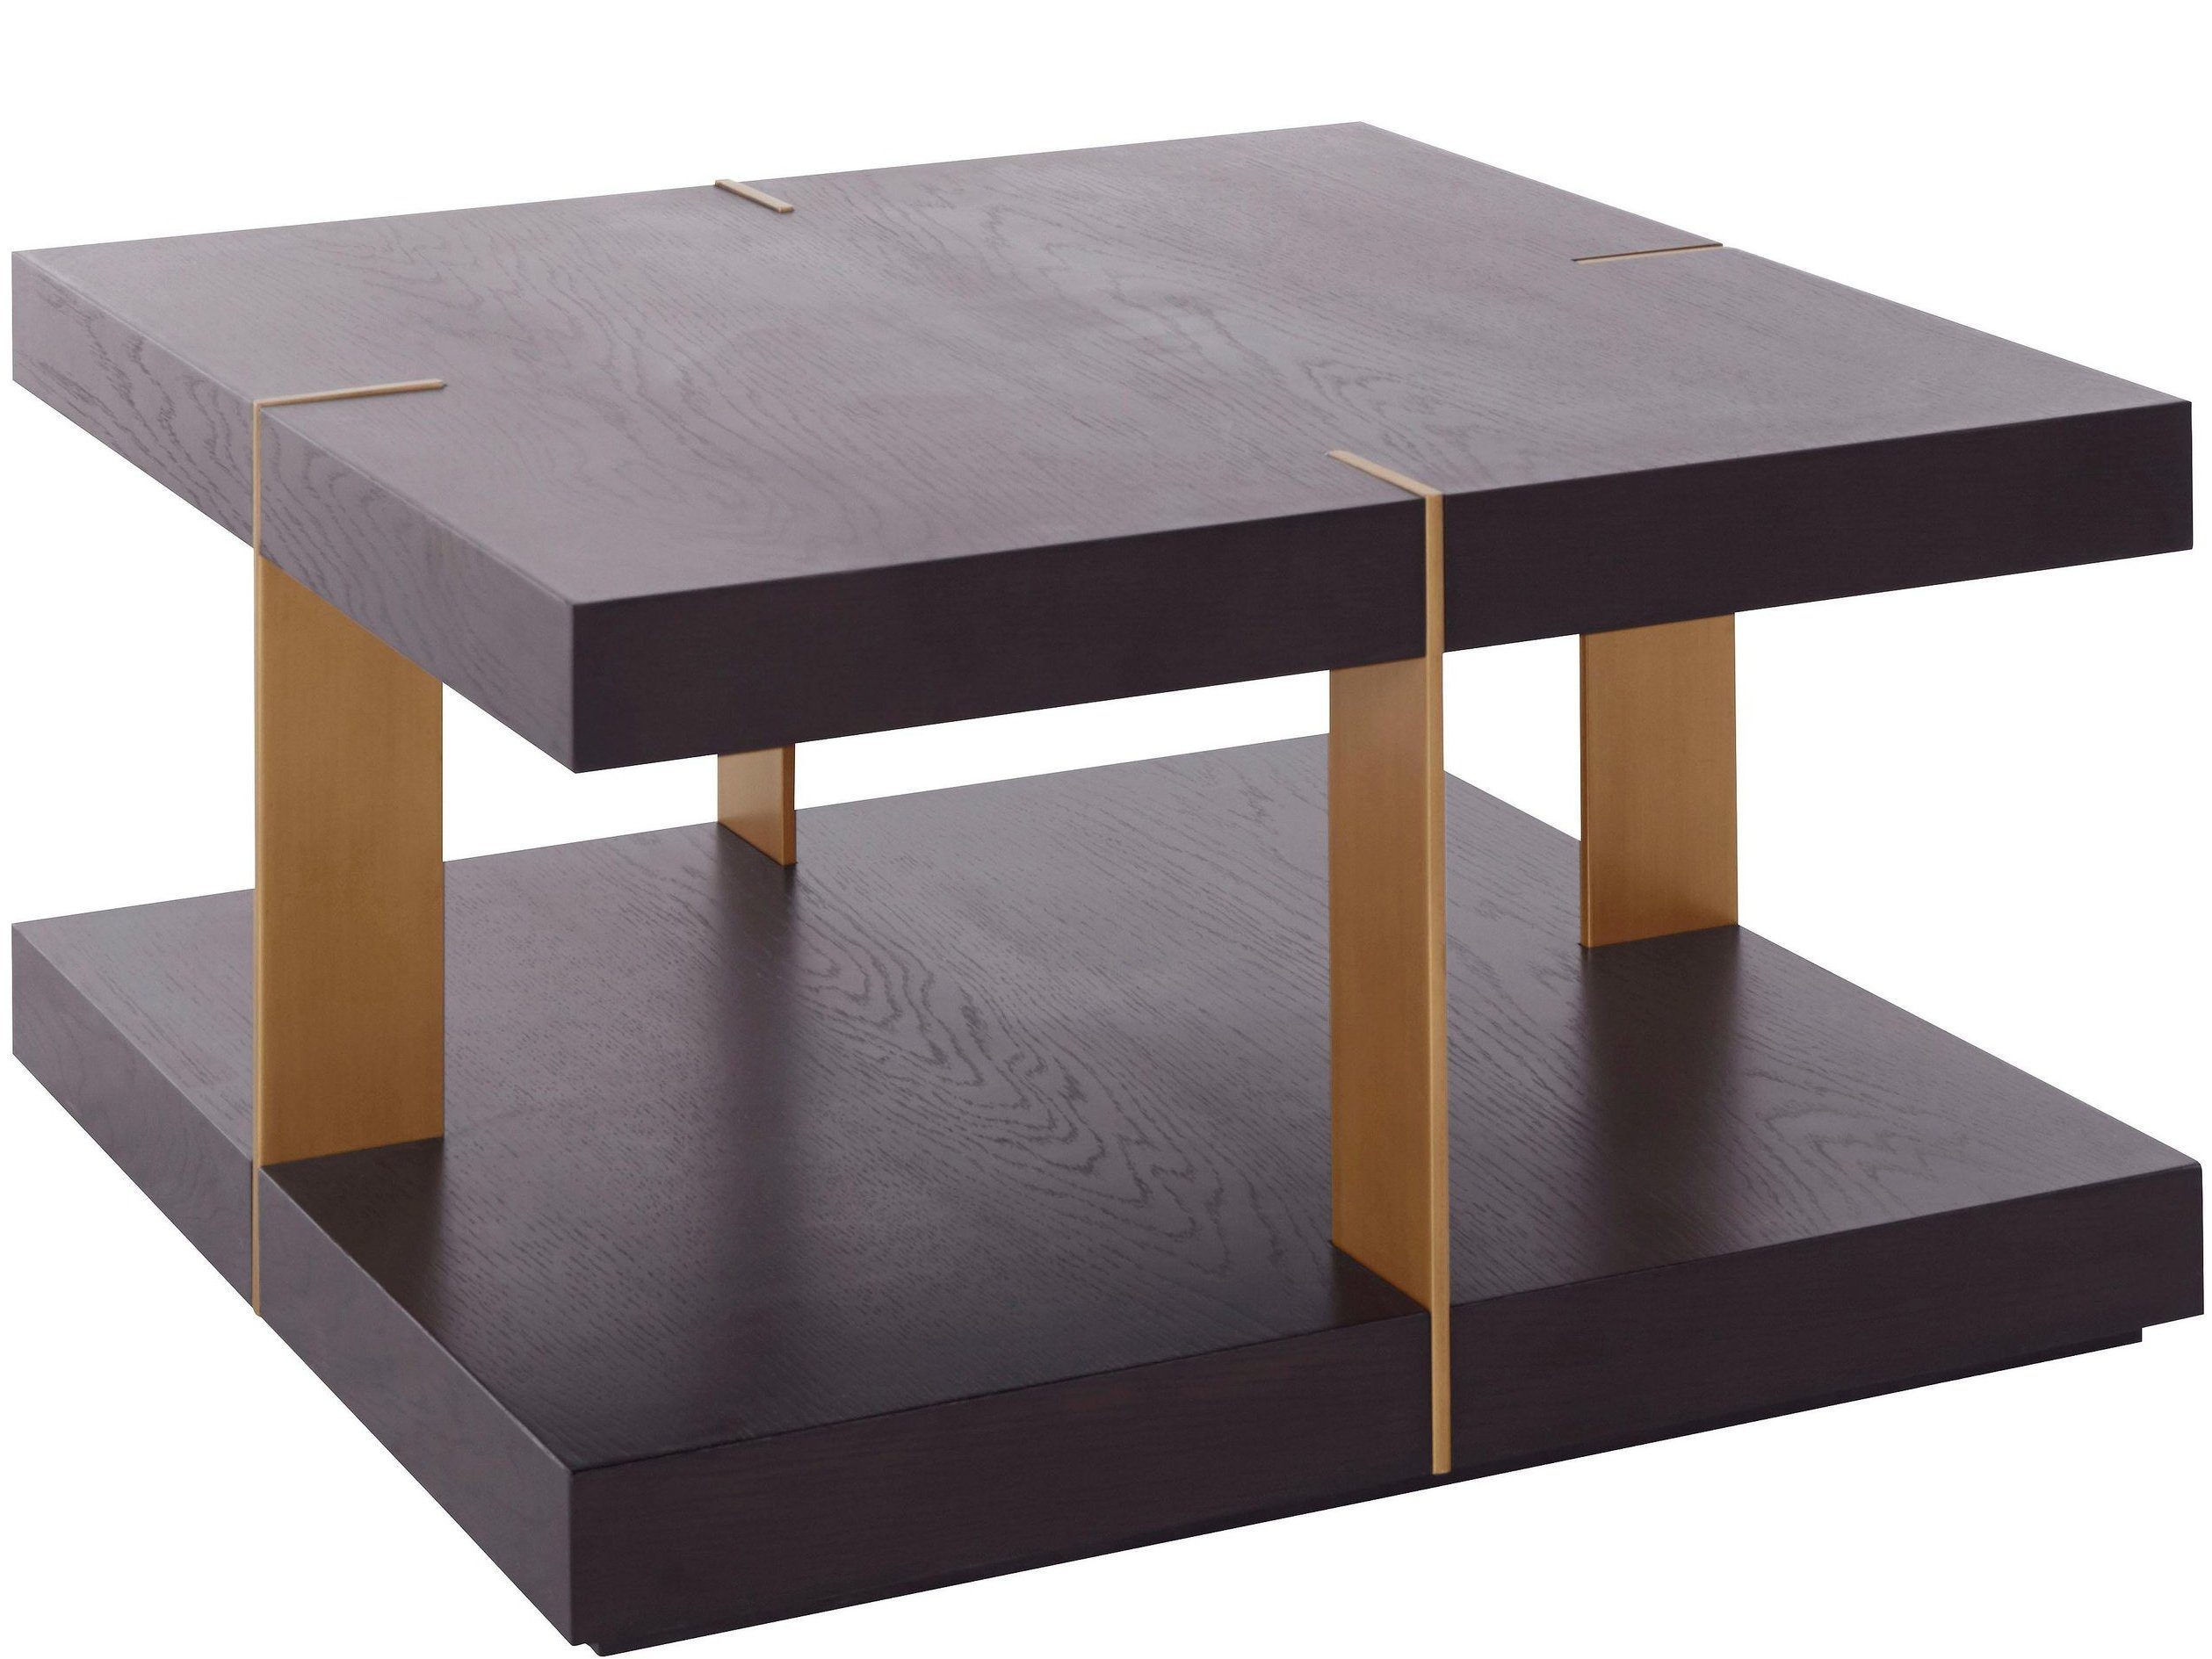 loft24 Wohnzimmertisch Veda, aus Holz und Metall gefertigt, weitere Farben und Größen erhältlich braun/messing | Tische